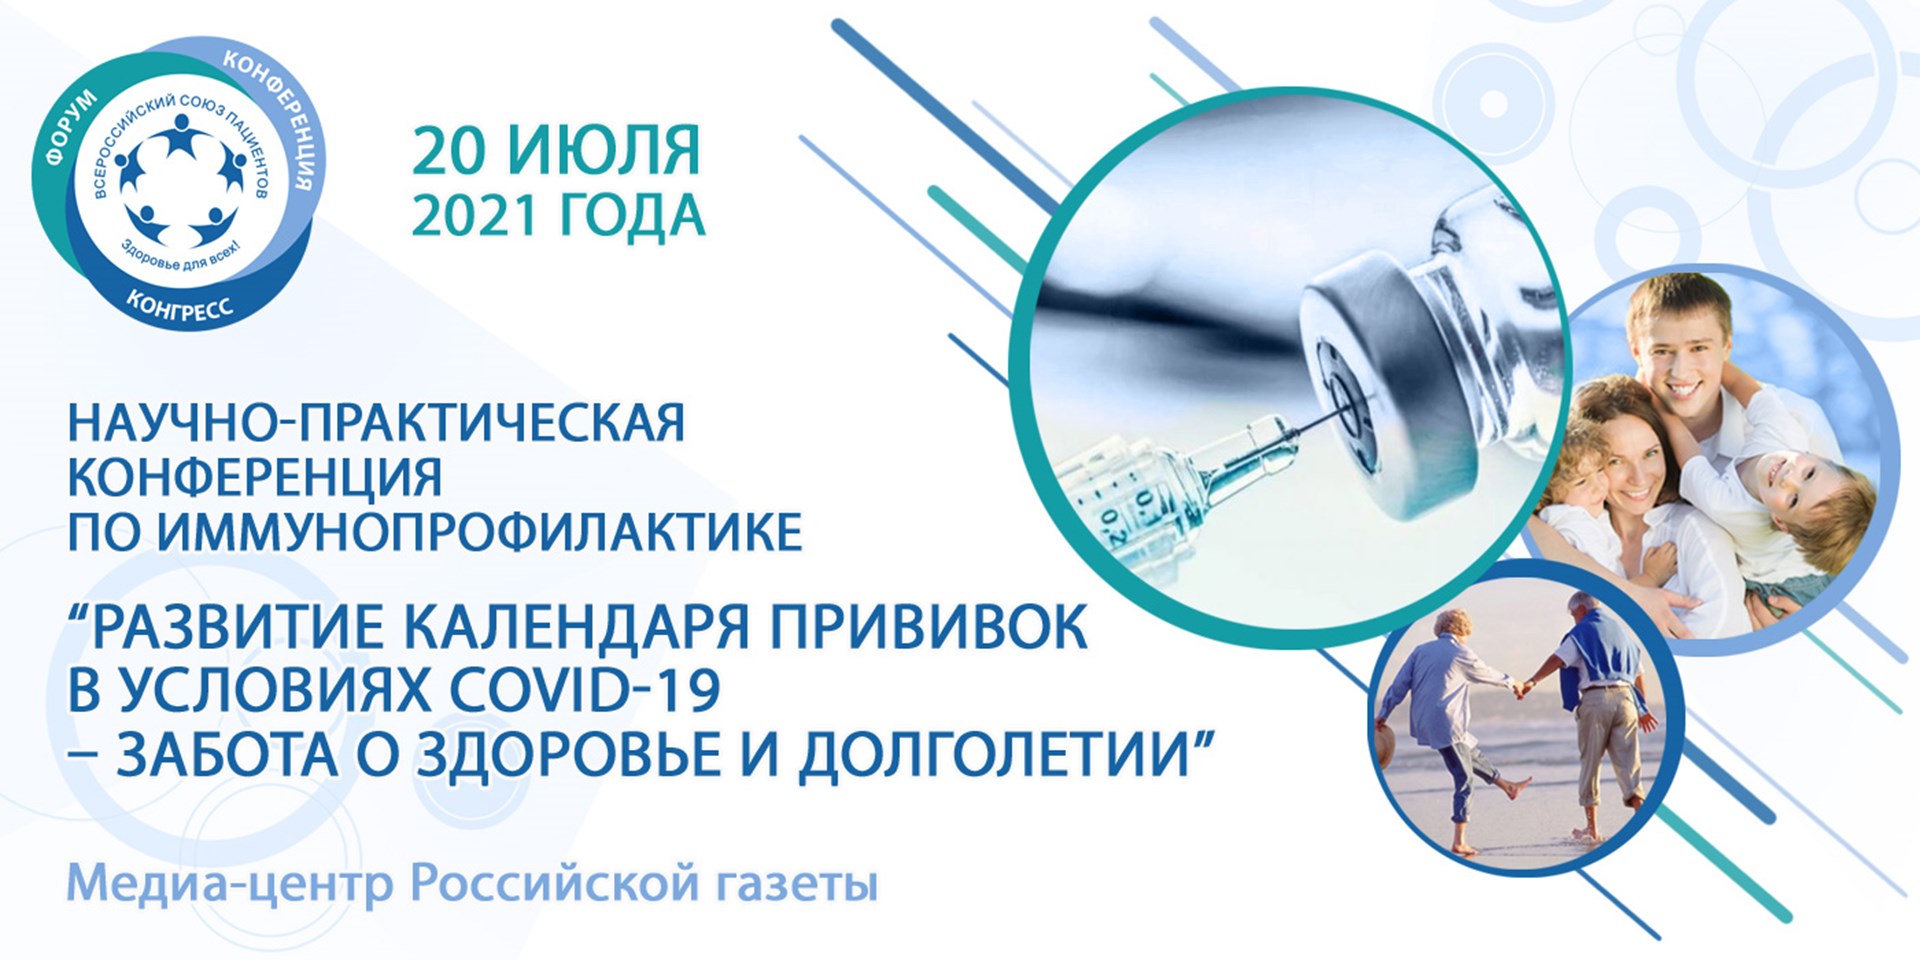 Всероссийский союз пациентов проведет конференцию, посвященную развитию календаря прививок в условиях COVID-19